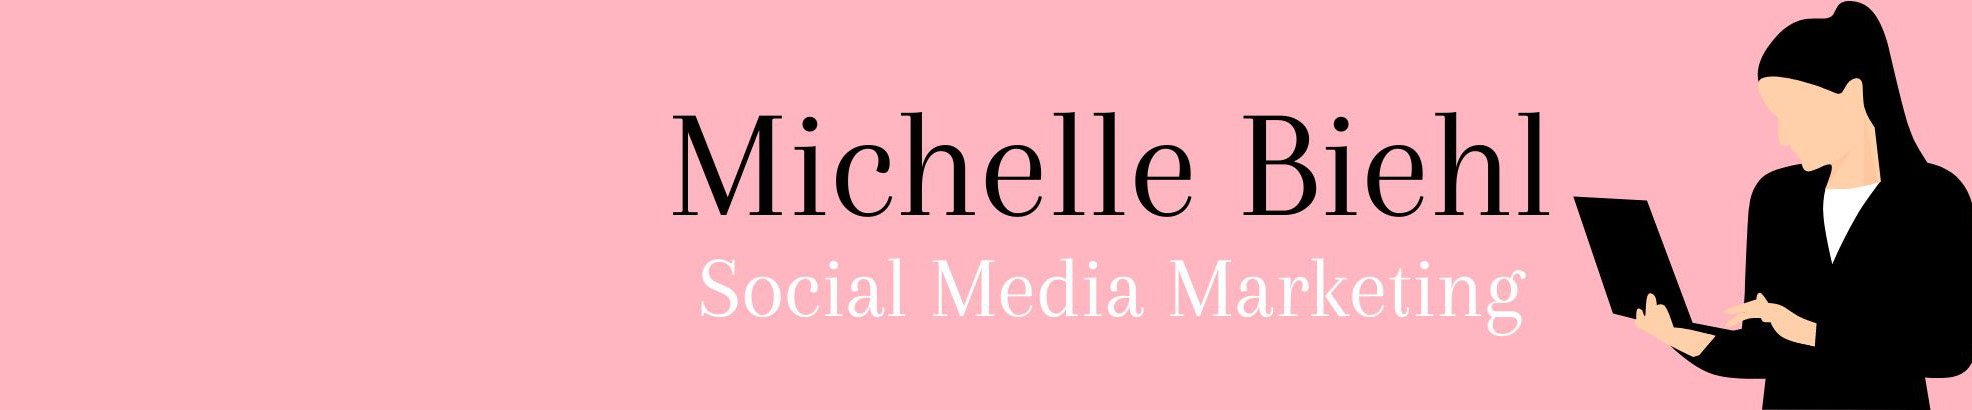 Biehl Michelles profilbanner